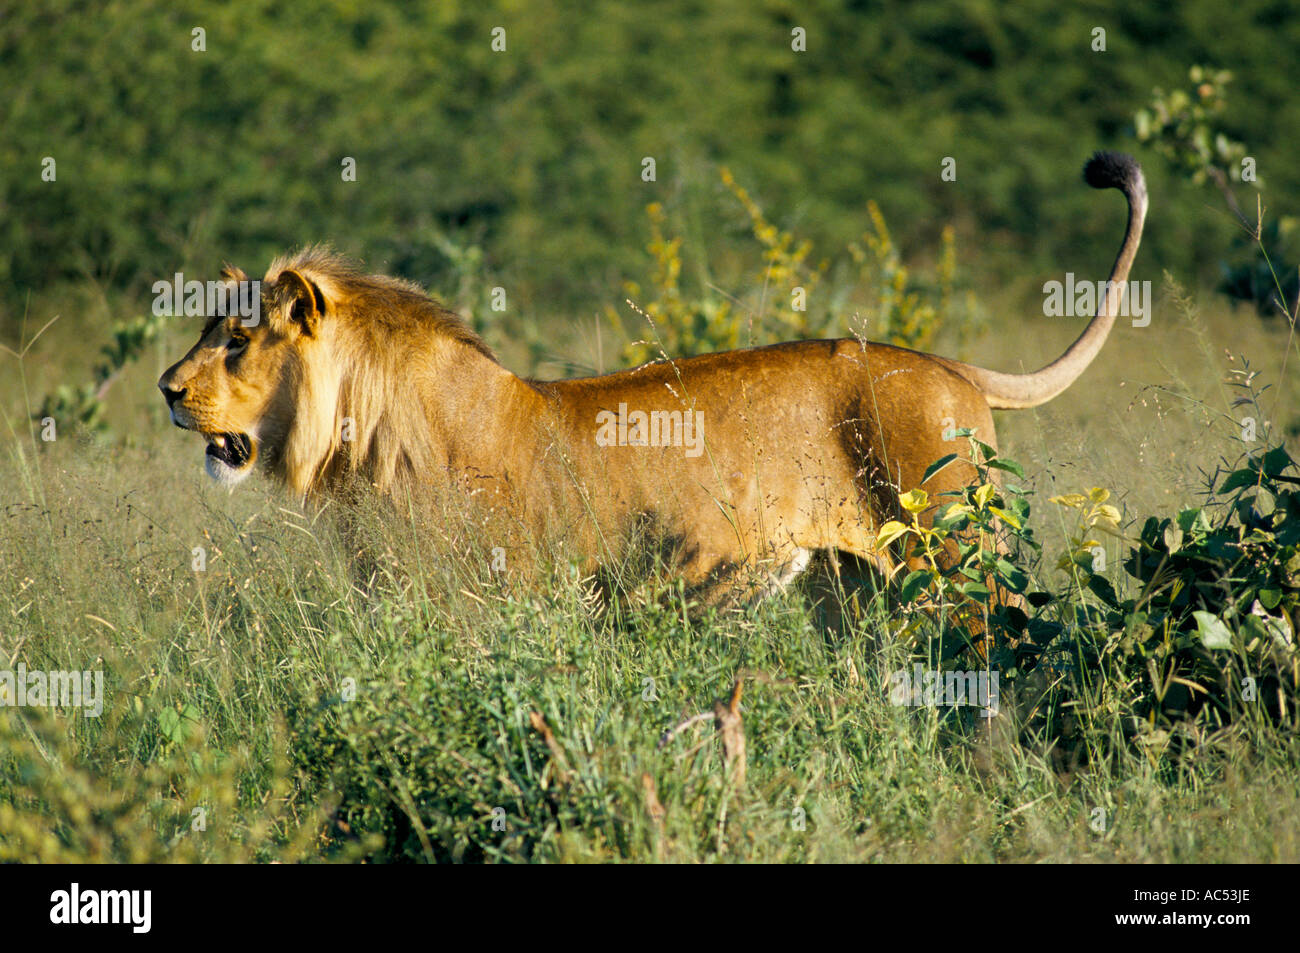 LION IN HWANGE NATIONAL PARK ZIMBABWE  Stock Photo